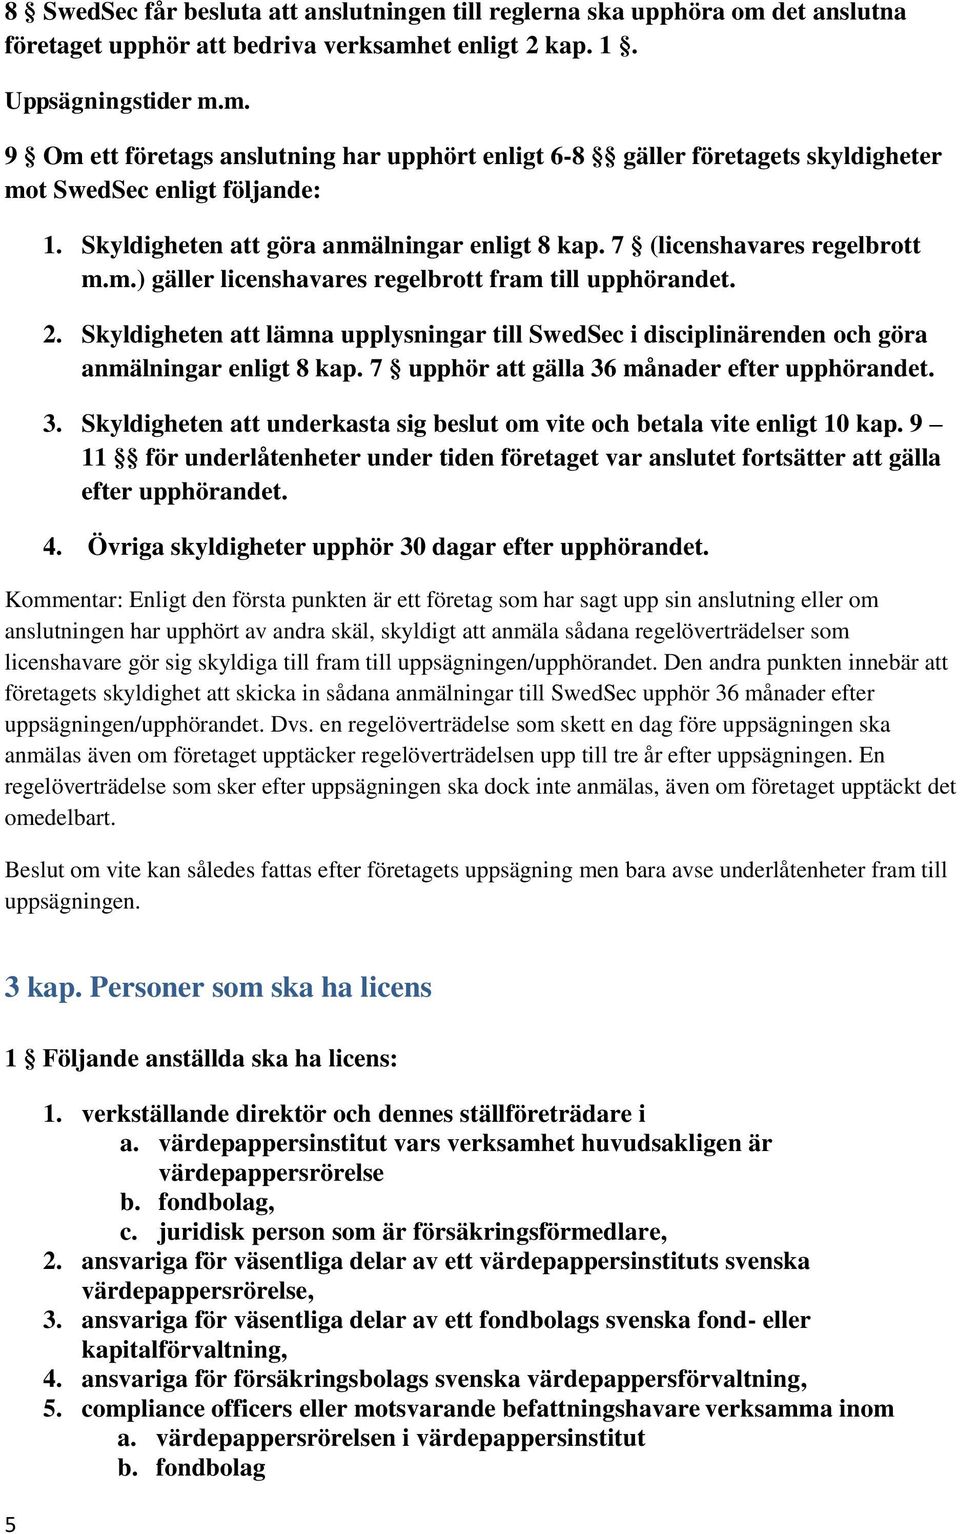 Skyldigheten att lämna upplysningar till SwedSec i disciplinärenden och göra anmälningar enligt 8 kap. 7 upphör att gälla 36